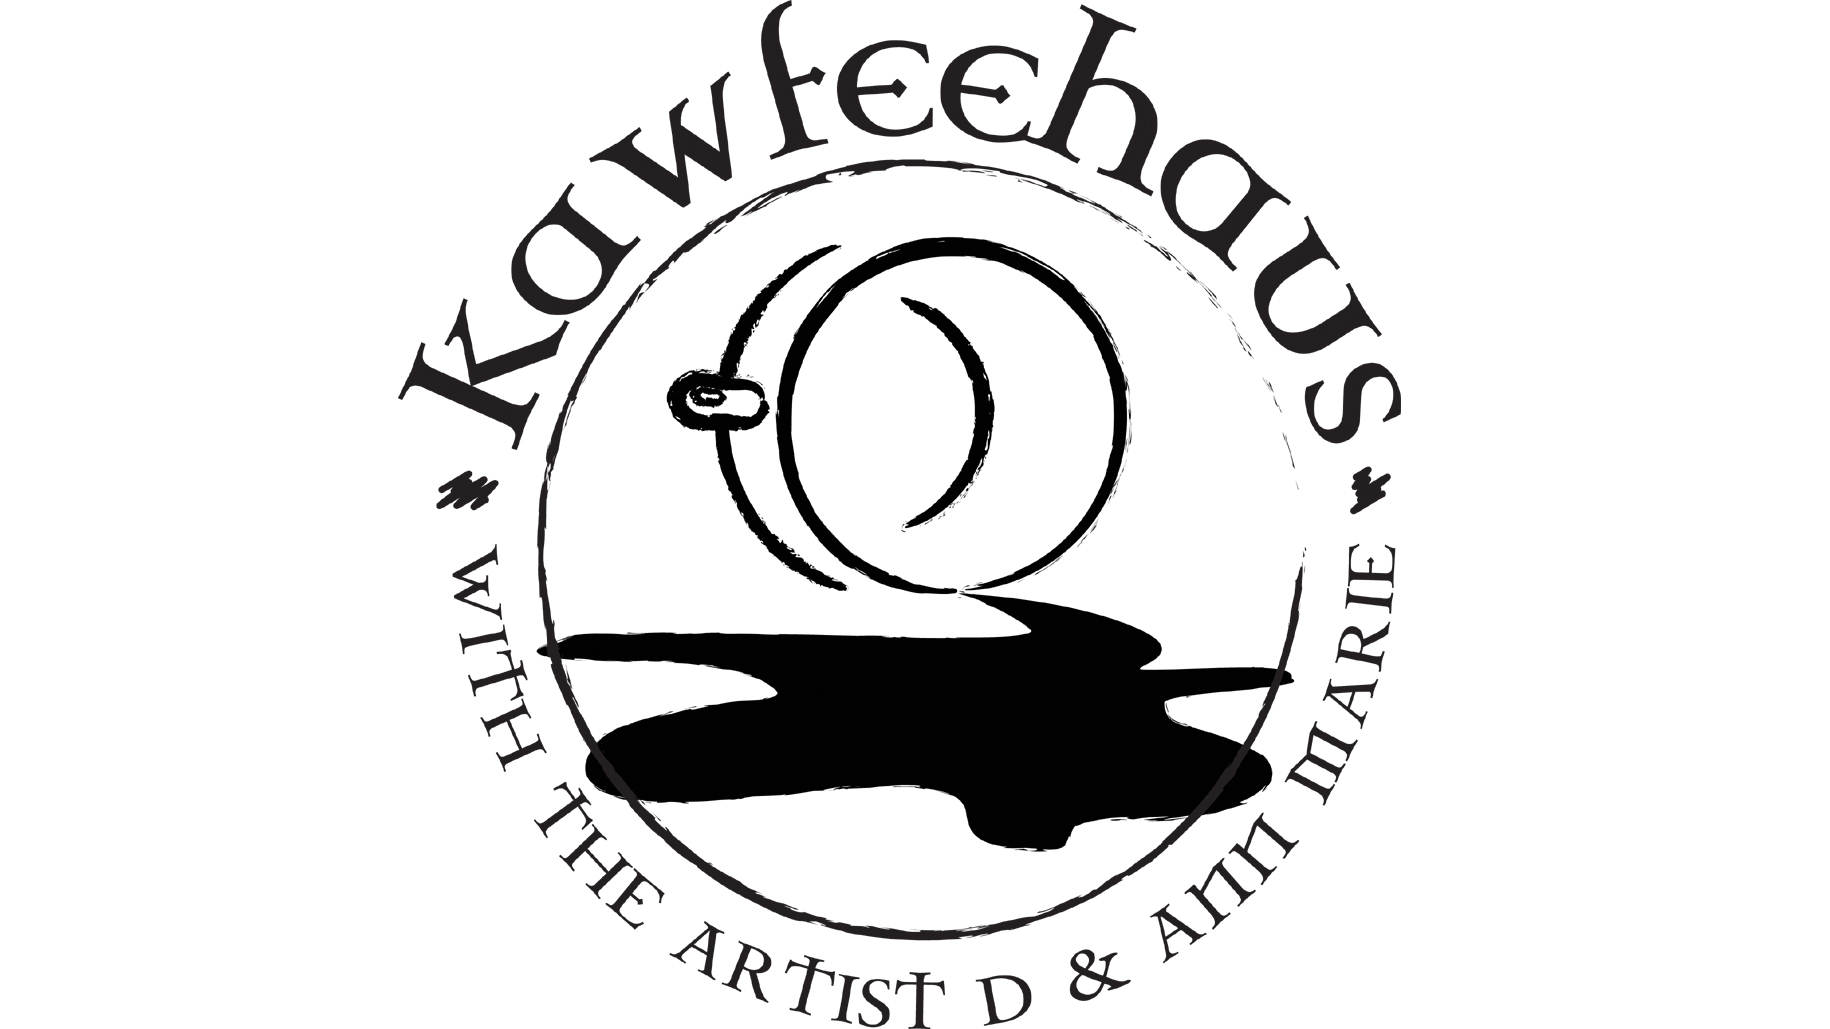 Kawfeehaus with Artist D & Ann Marie